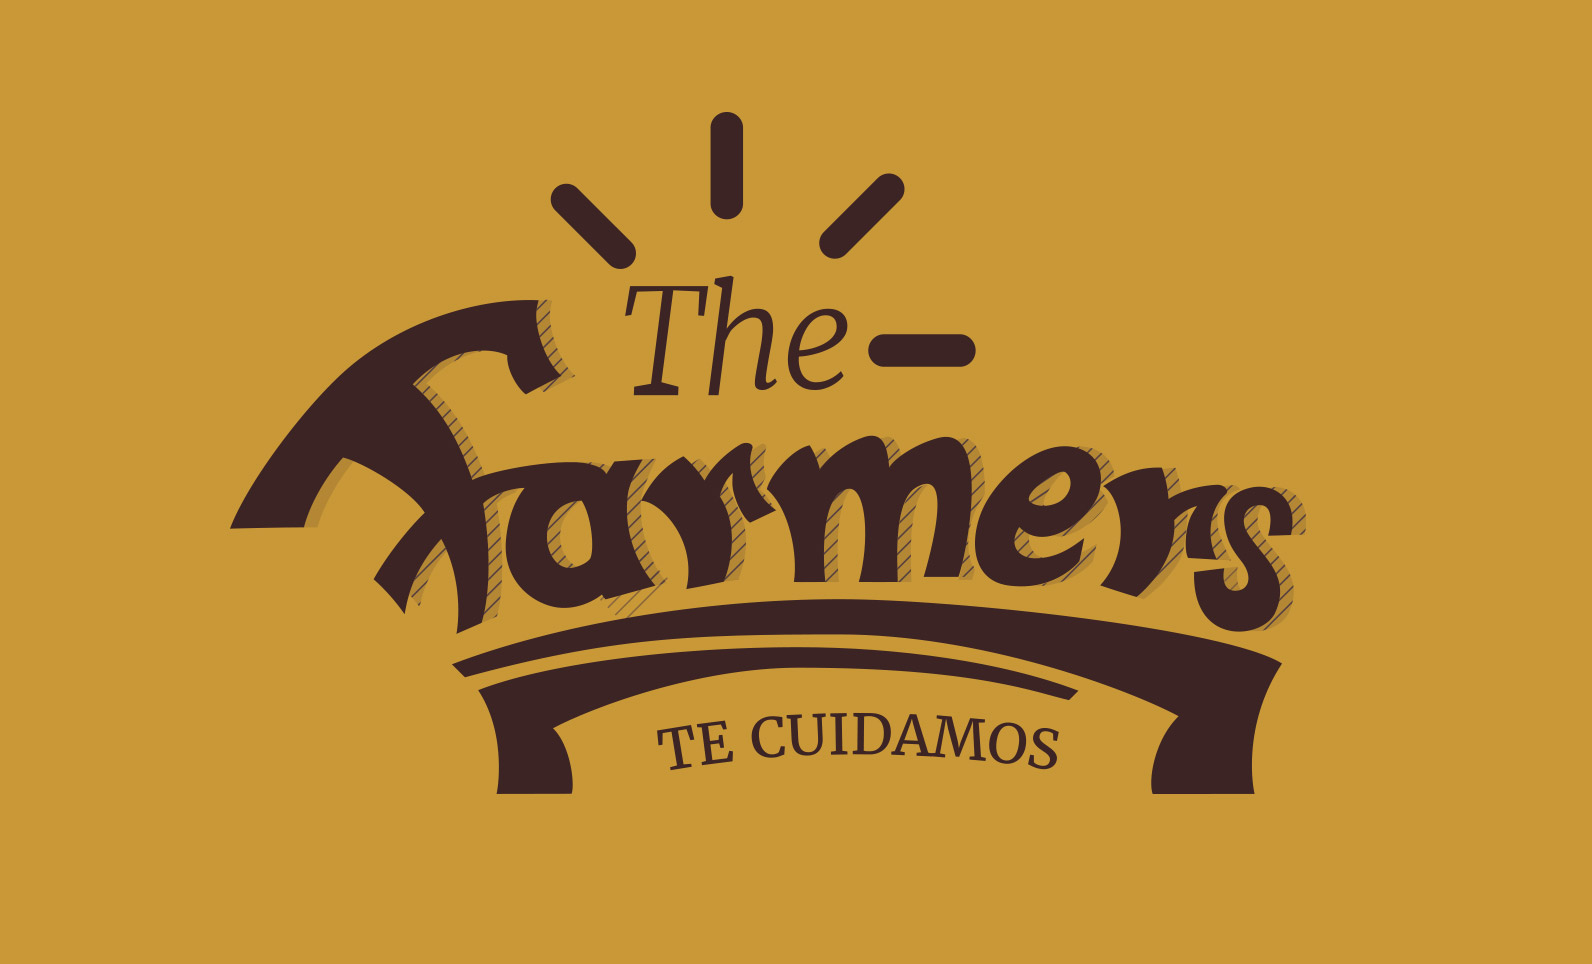 The Farmers